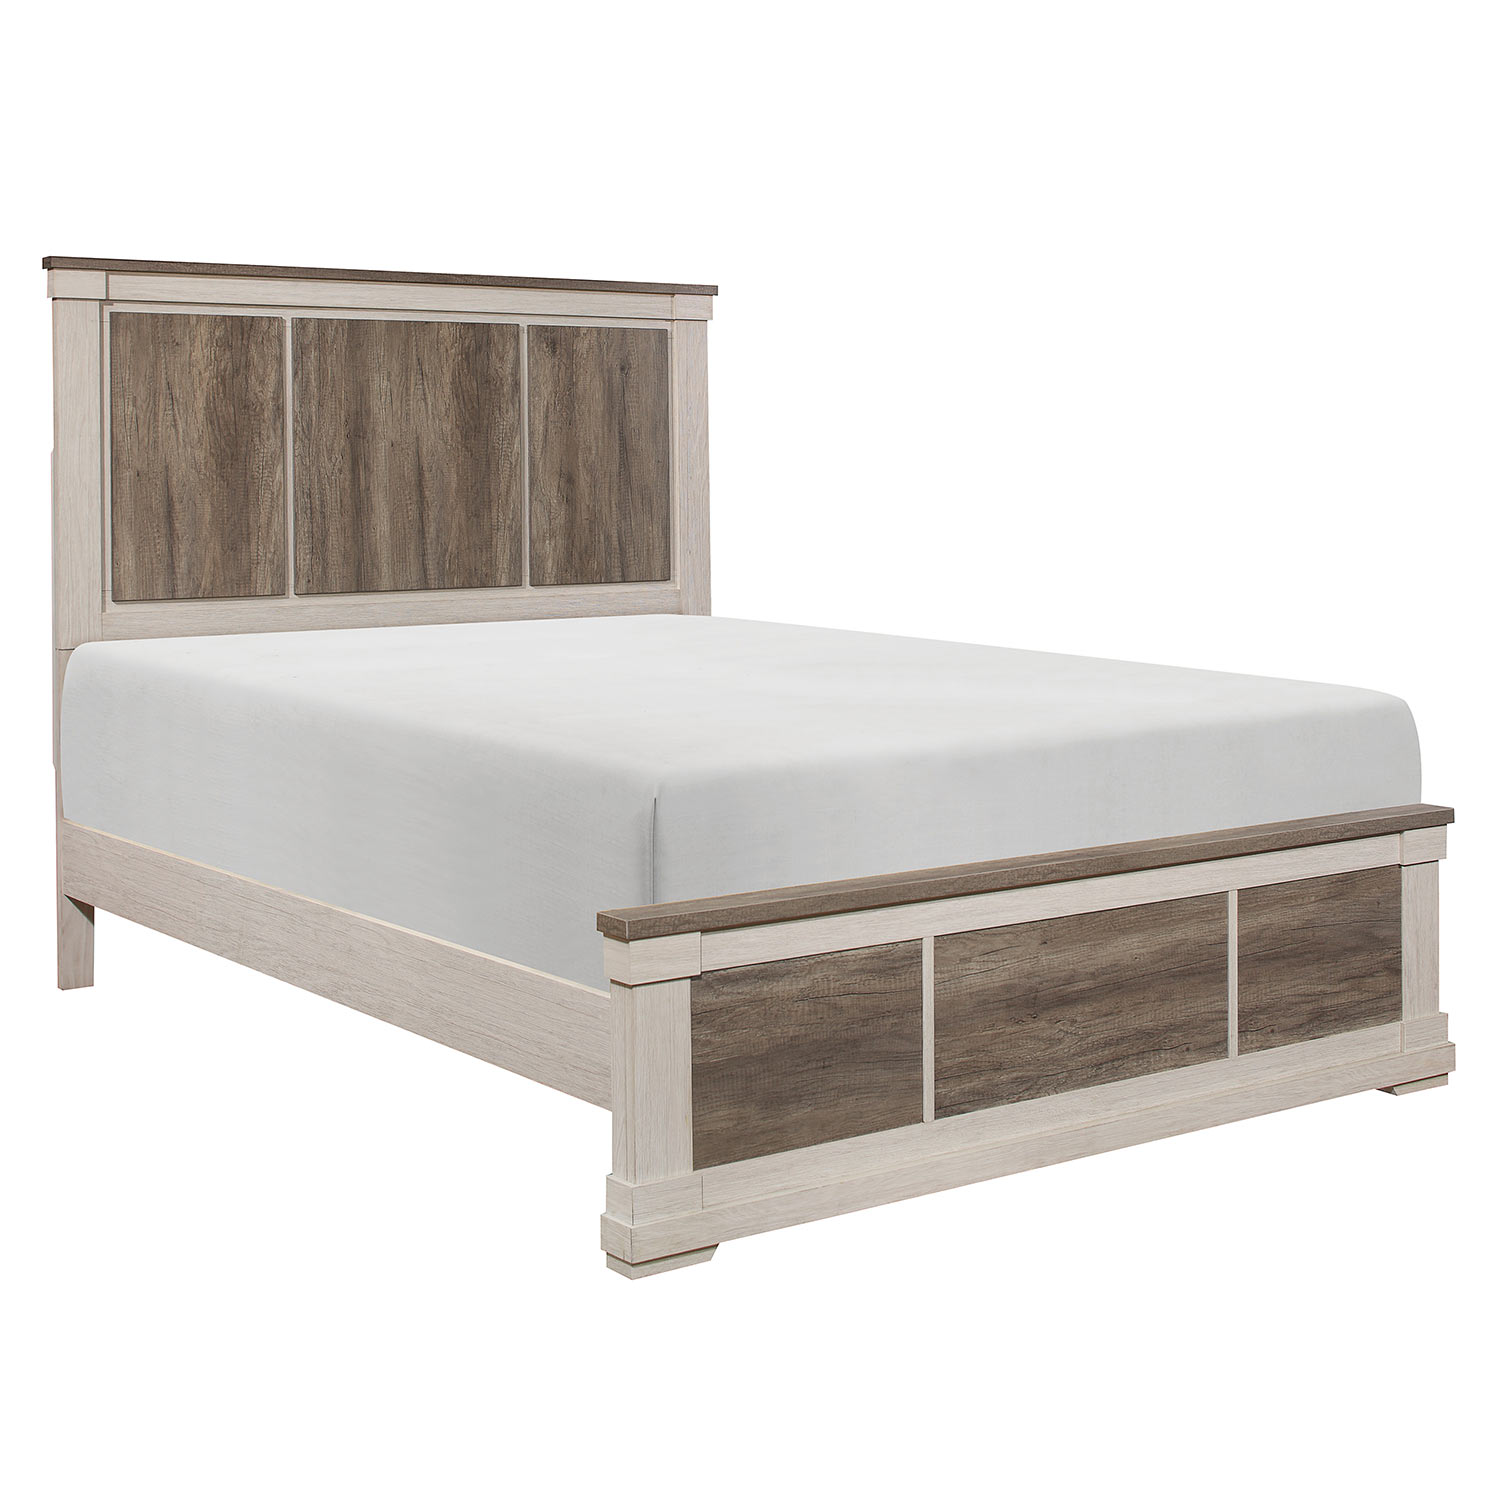 Homelegance Arcadia Bed - White Framing and Variegated Gray Printed Faux-Wood Grain Veneer